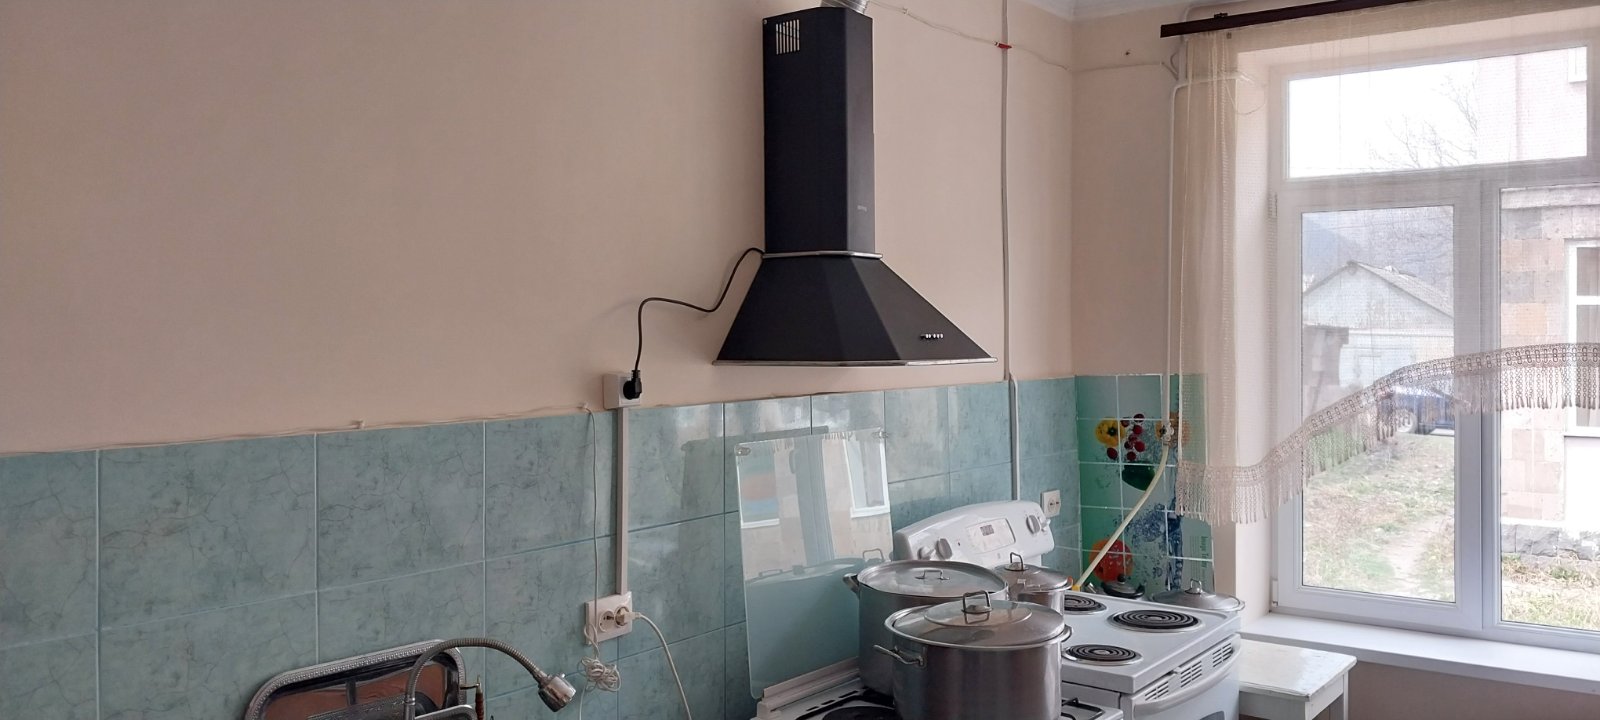 Օձուն համայնքում վերացվել է երկու մանկապարտեզների խոհանոցների արտադրական գործունեության կասեցումները